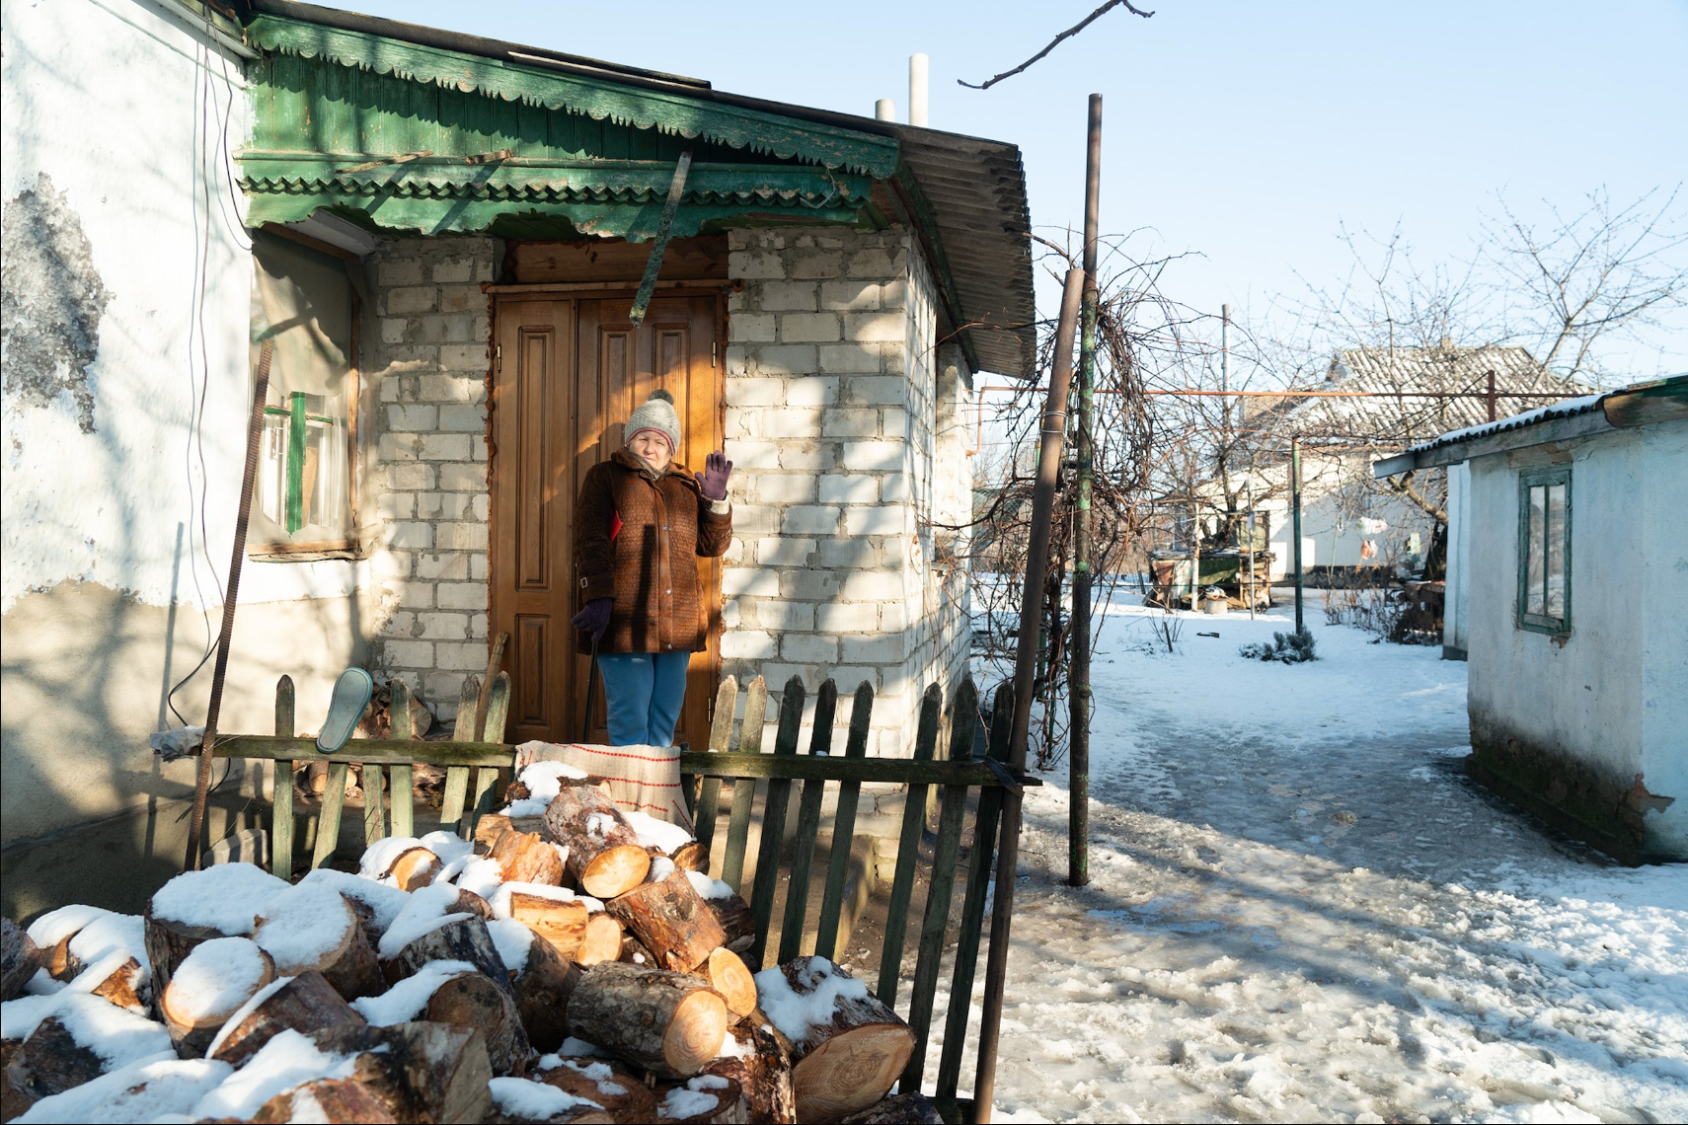 Liudmyla Konysheva compte parmi les personnes déplacées internes à Voznesensk. La brigade mobile lui apporte de l'aide, notamment en coupant du bois de chauffage pour l’aider à passer les mois froids de l’hiver. Photos : PNUD Ukraine/Liza Pyrozhkova